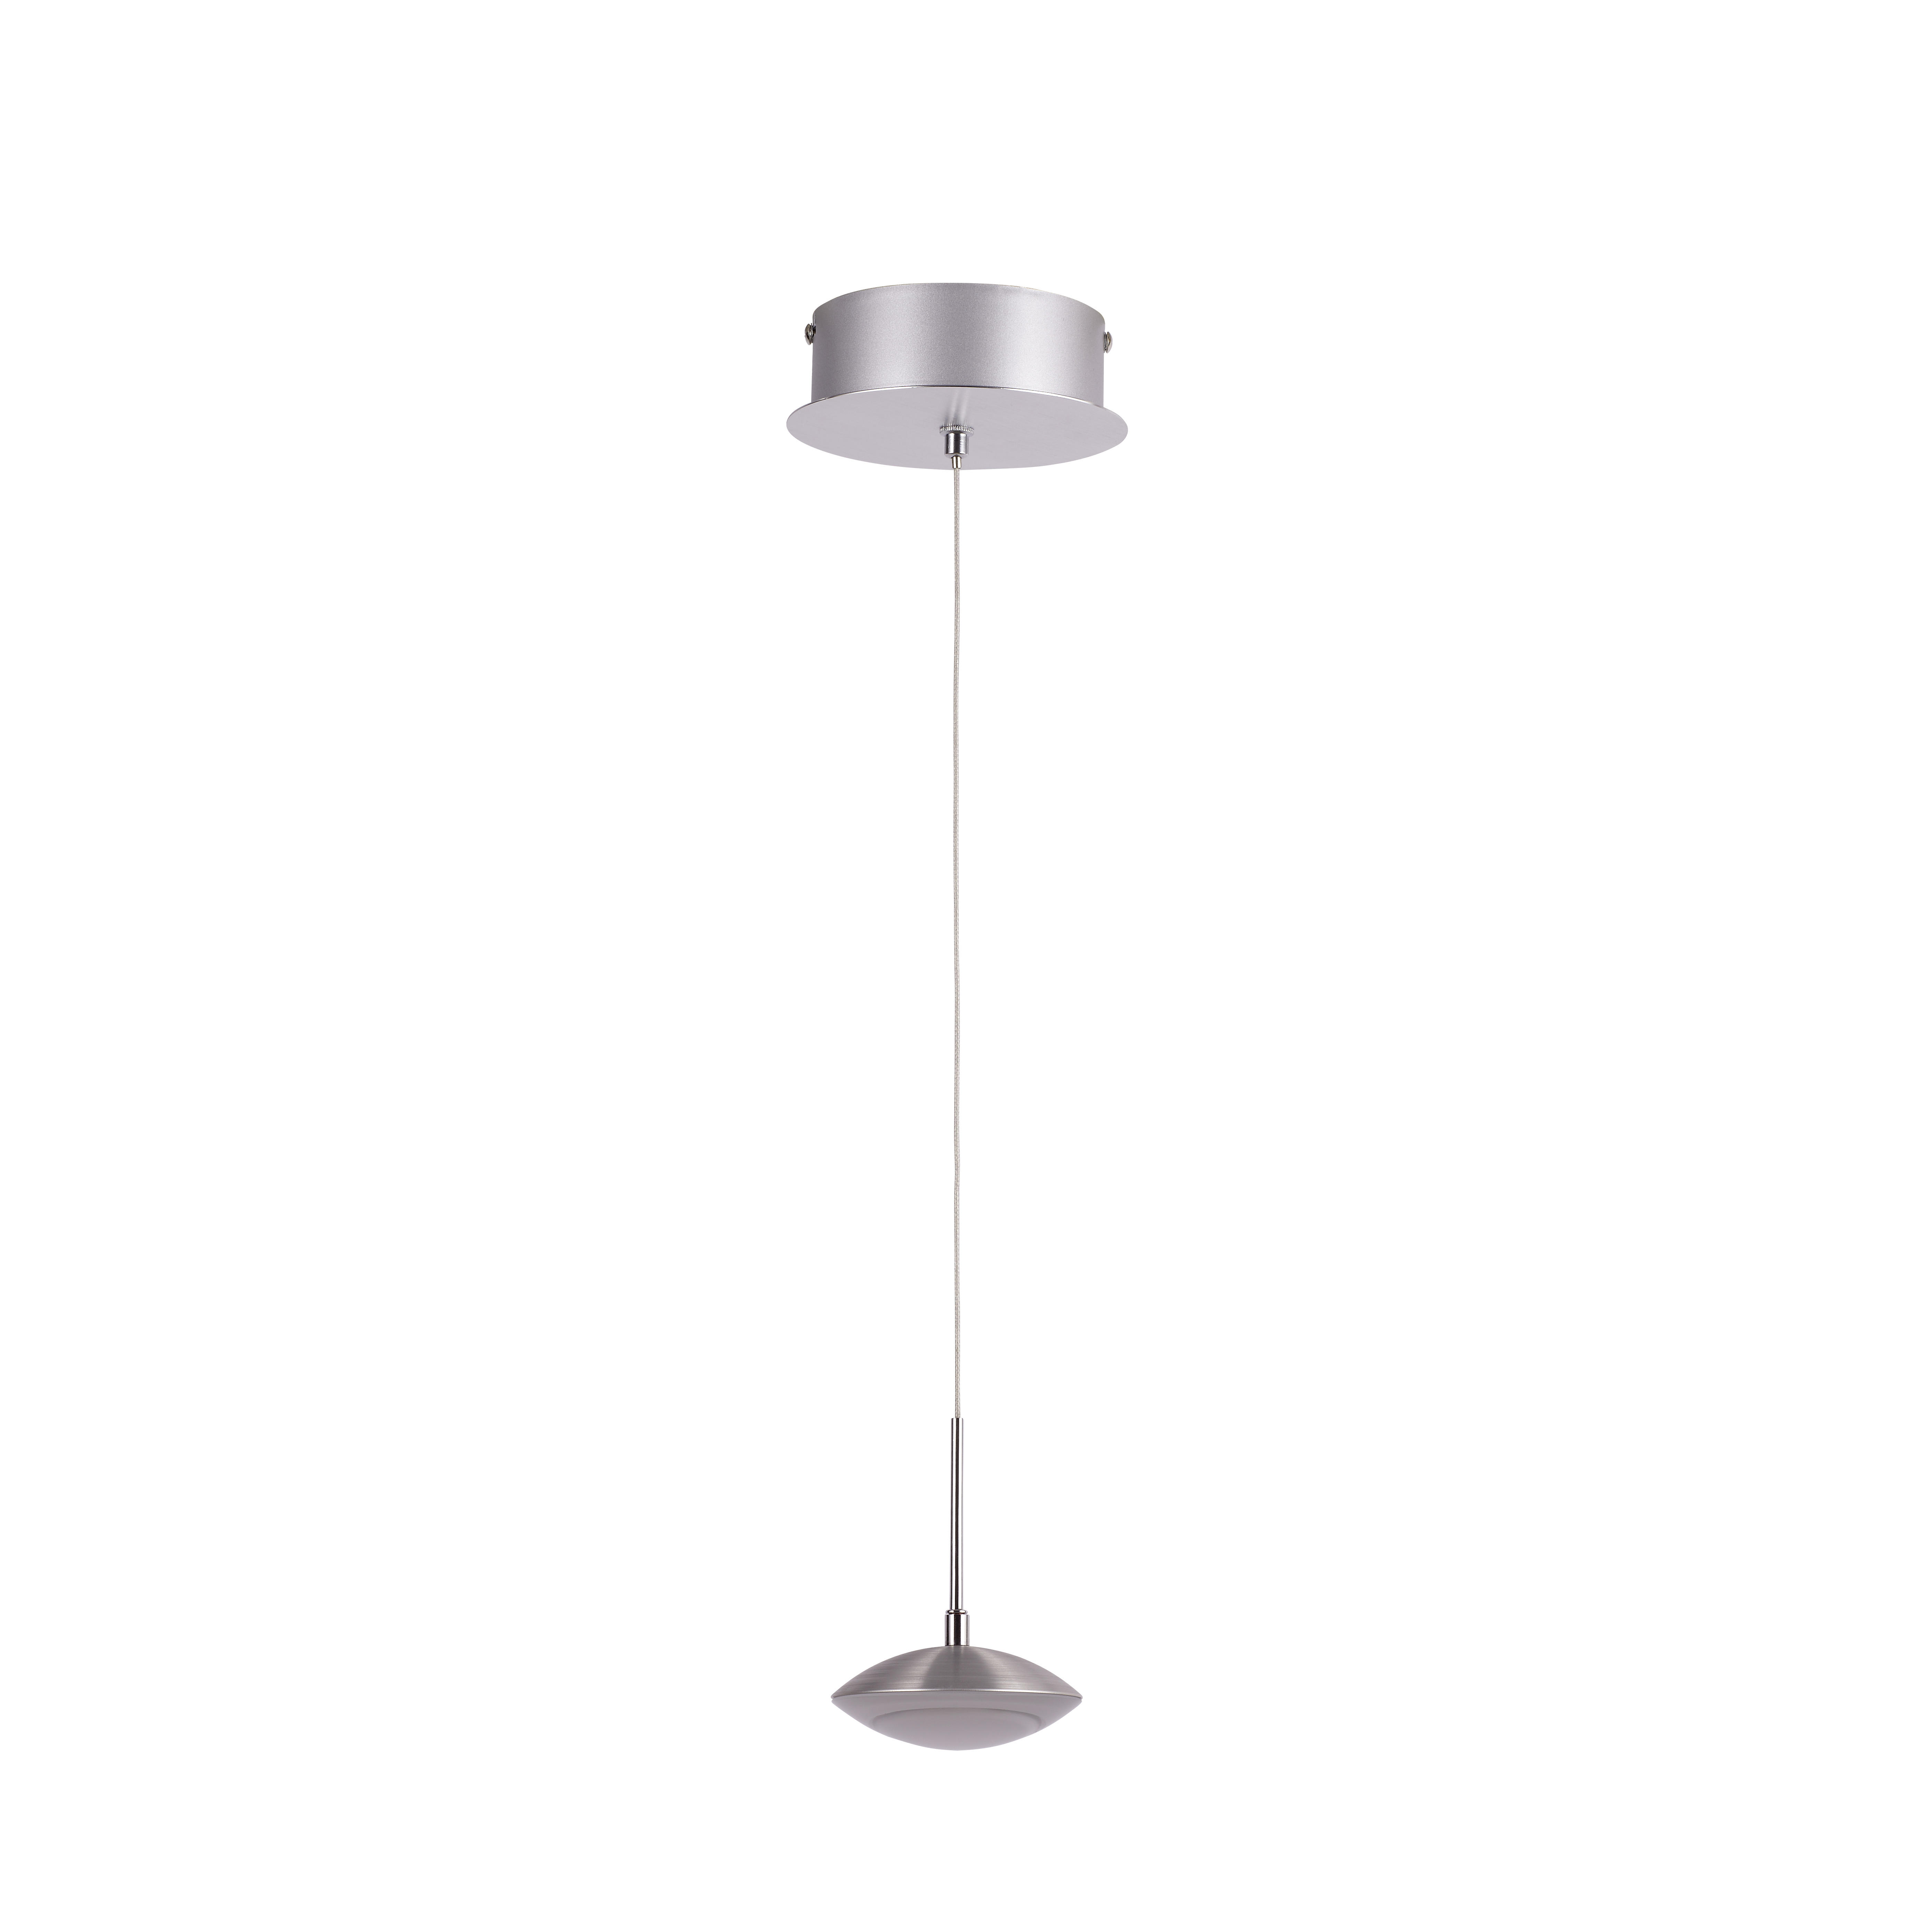 LED-HÄNGELEUCHTE  - Alufarben/Weiß, LIFESTYLE, Kunststoff/Metall (10/200cm)